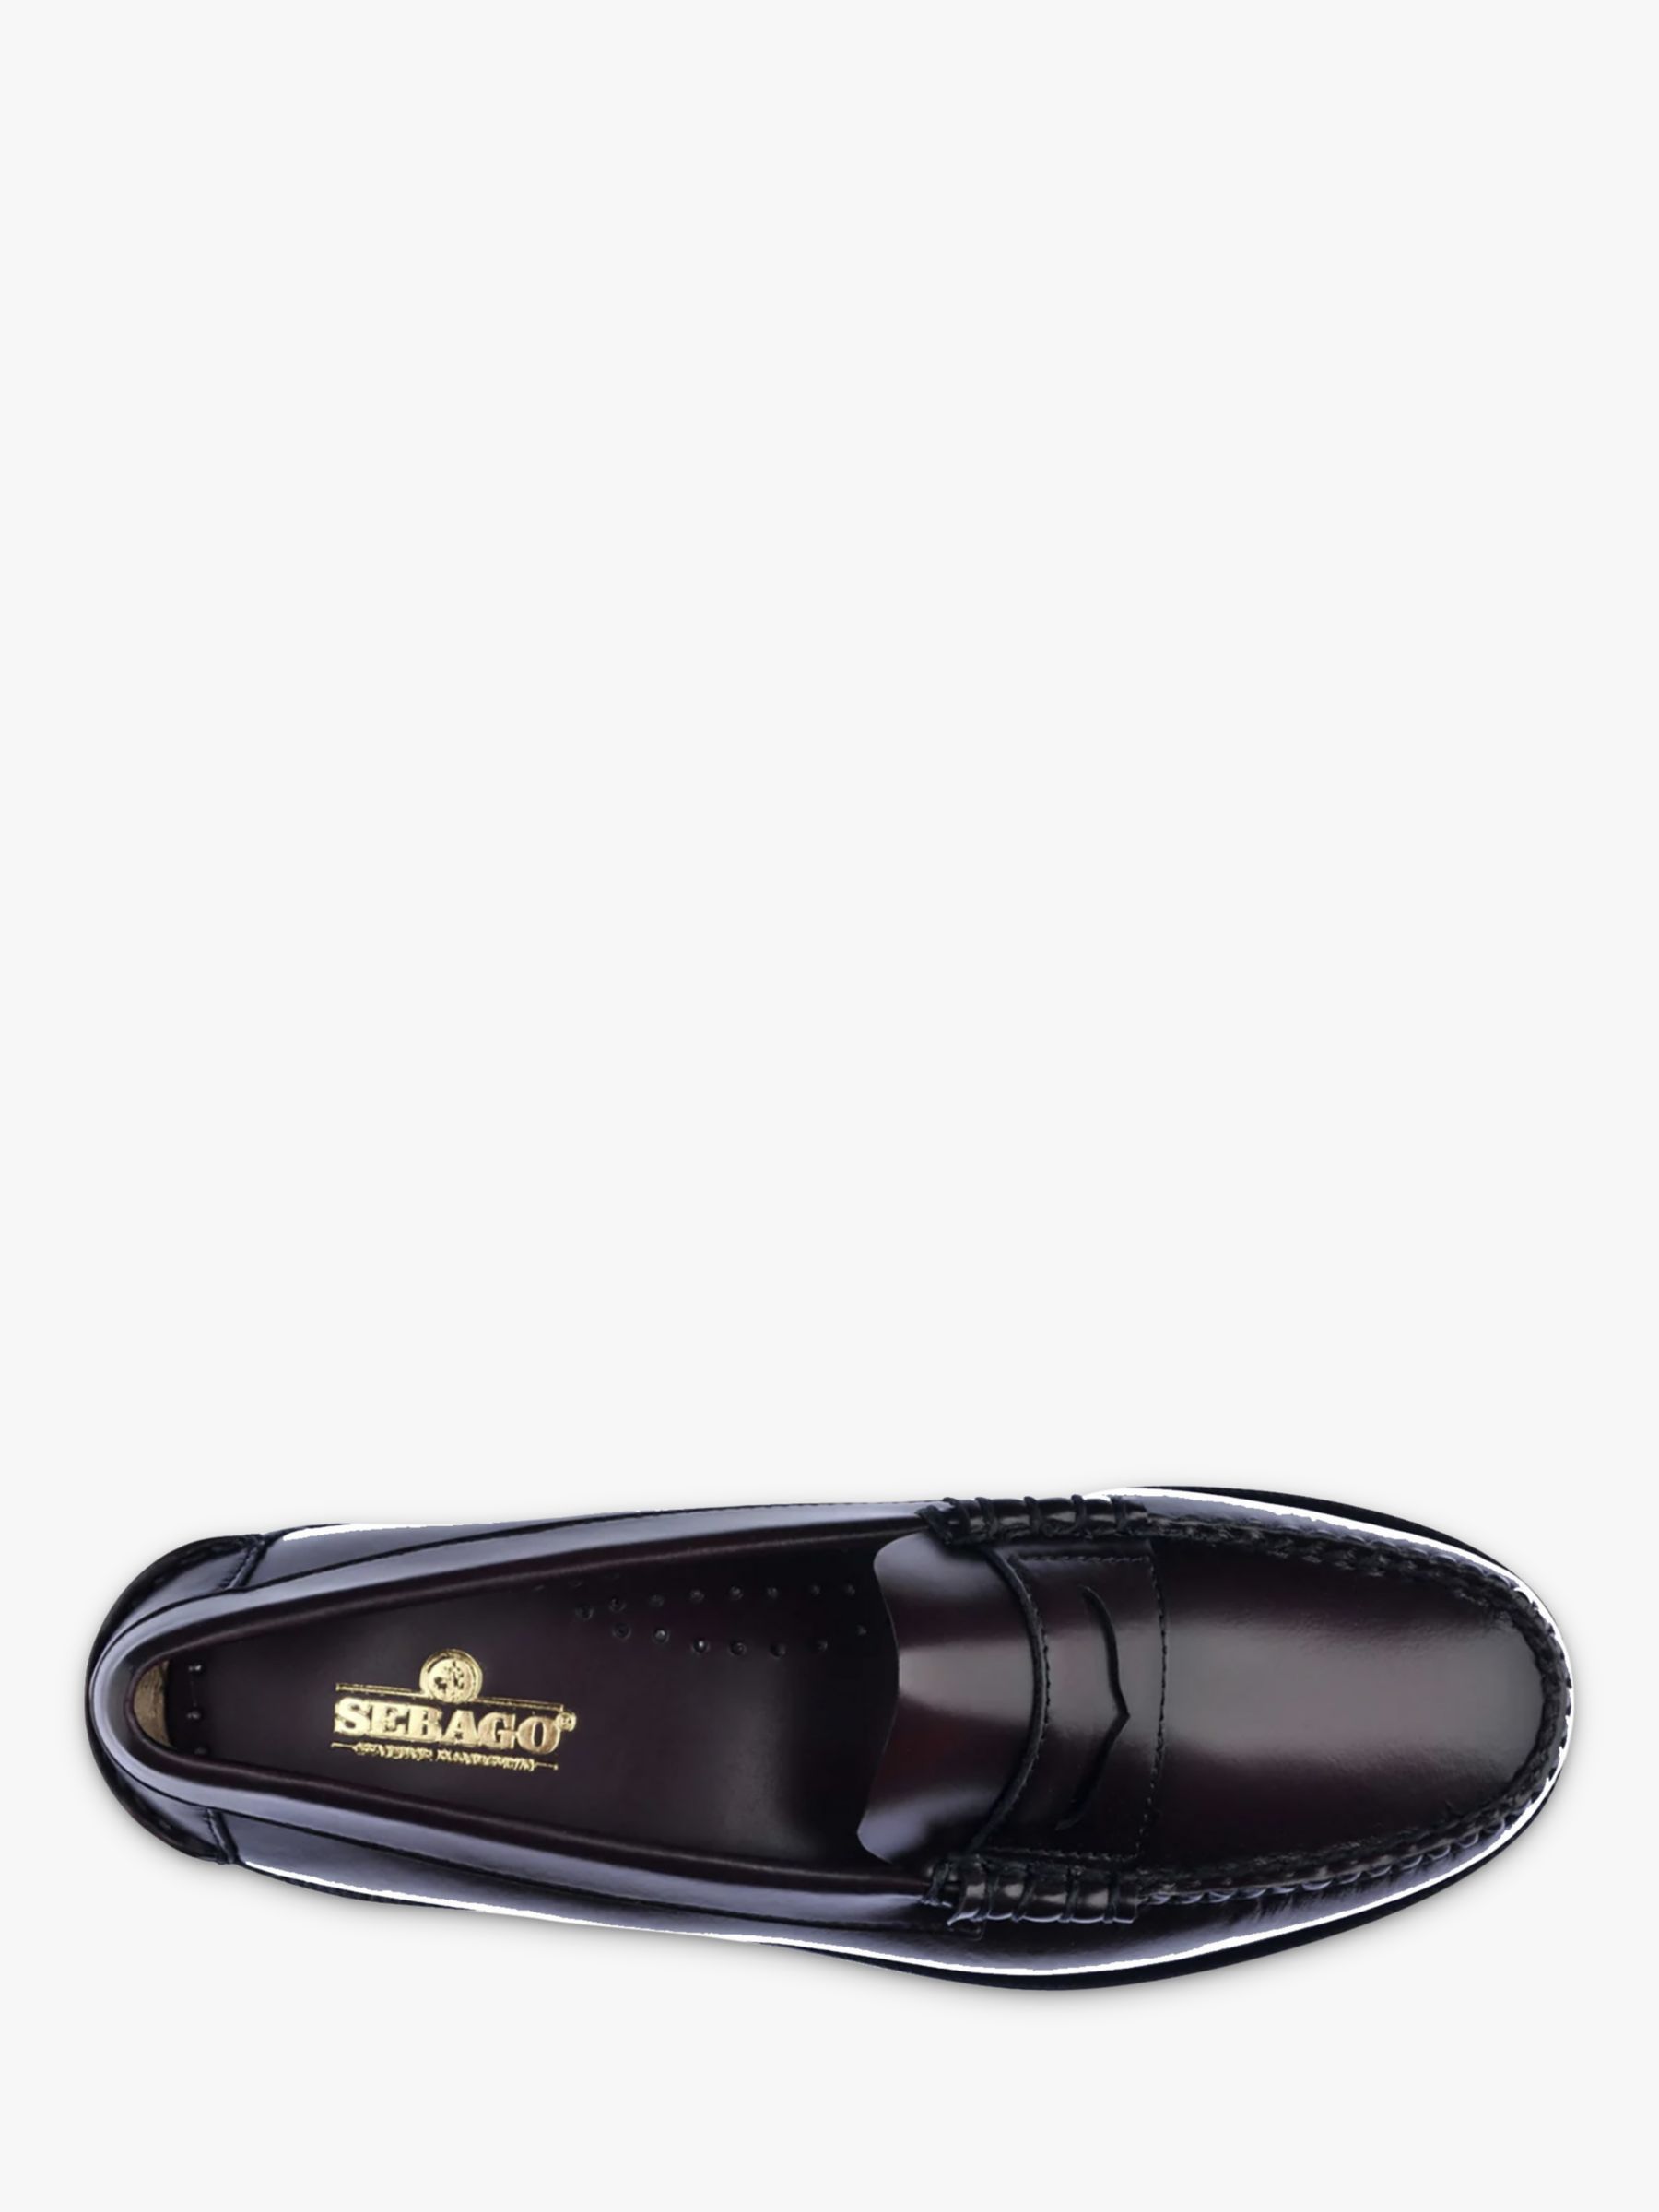 Sebago Dan Classic Leather Loafers, Brown Burgundy, 7